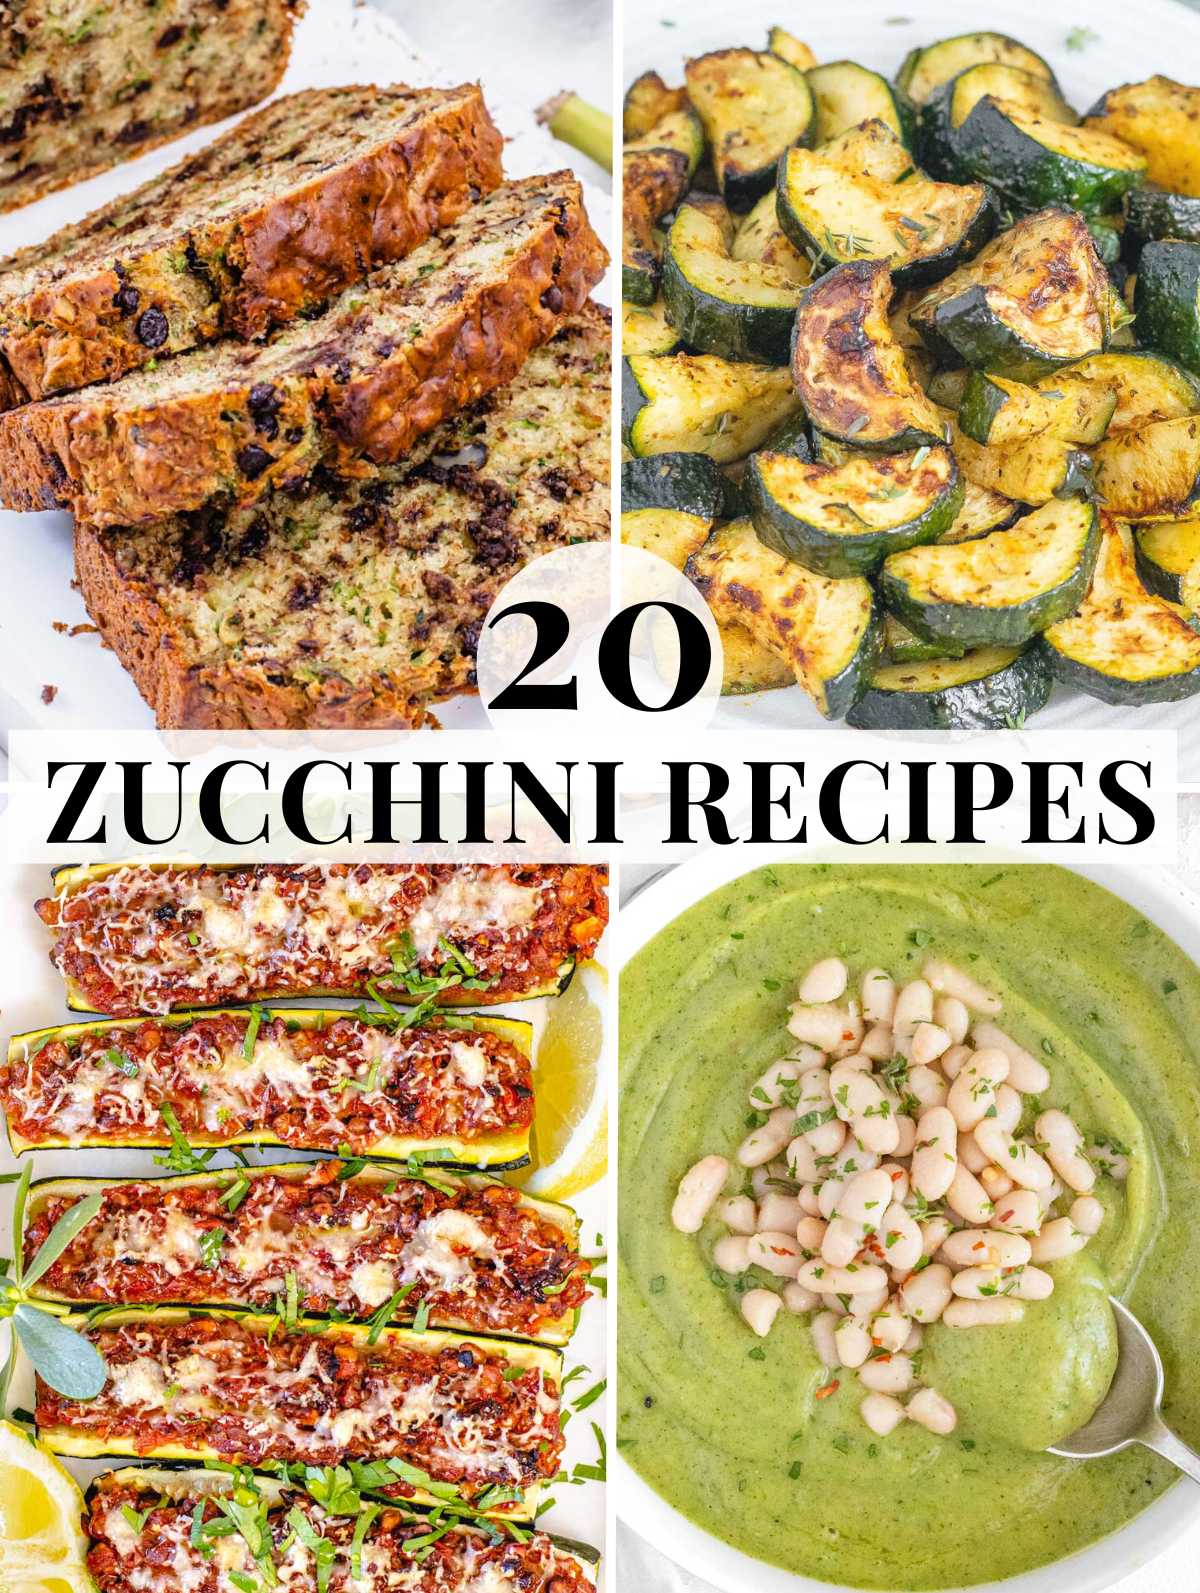 Easy Zucchini recipes